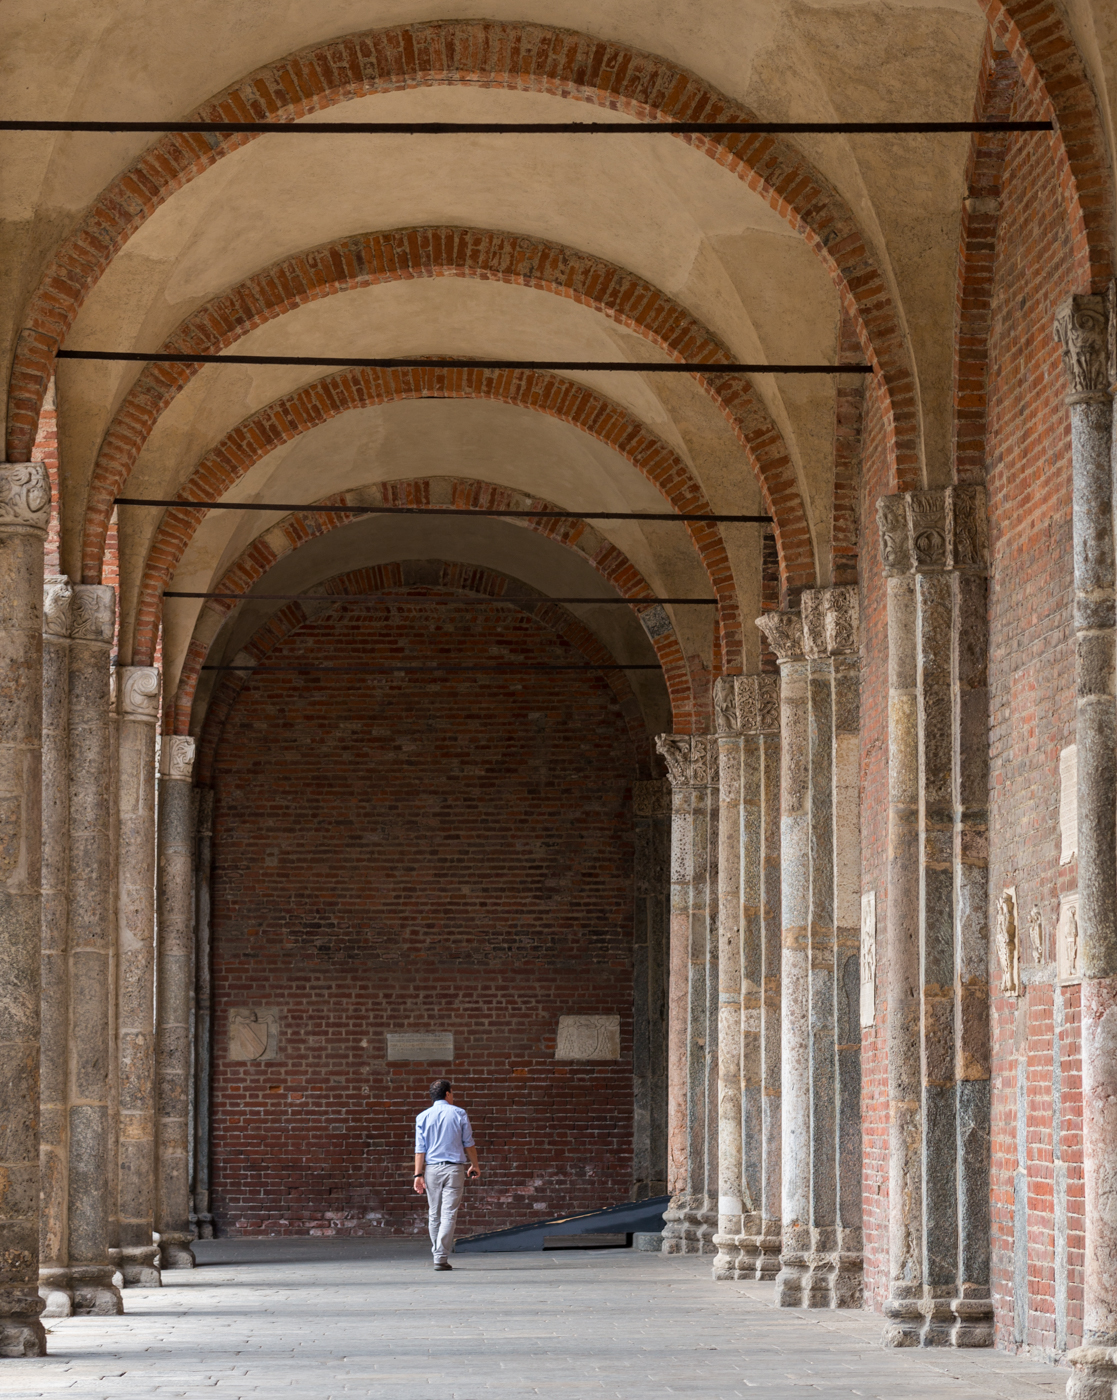 Quadriportico of Basilica di Sant'Ambrogio in Milano | Photo by Mike Hudak